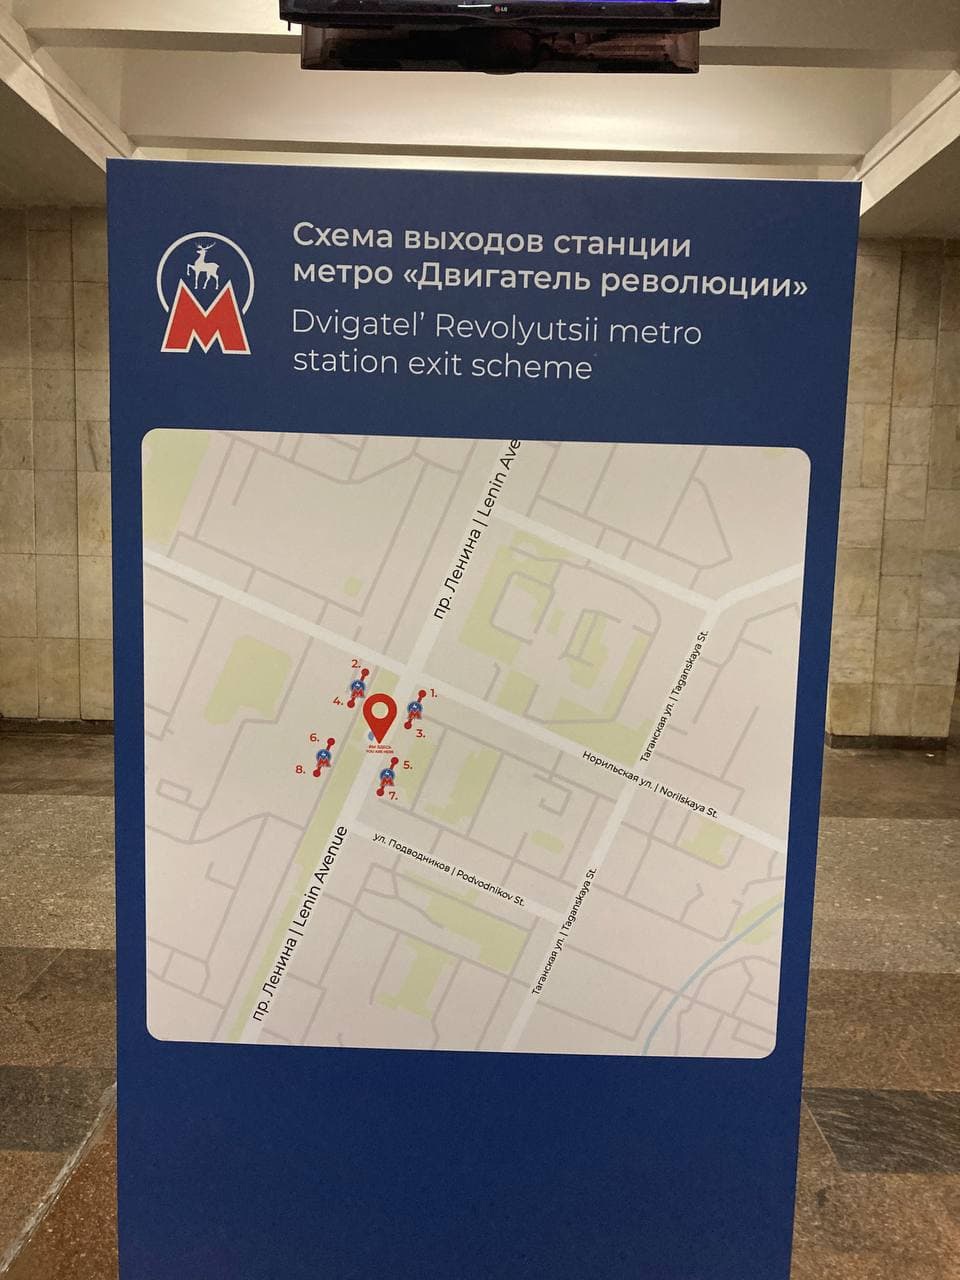 Установленная в метро навигационная схема с ошибками вызвала недоумение у нижегородцев